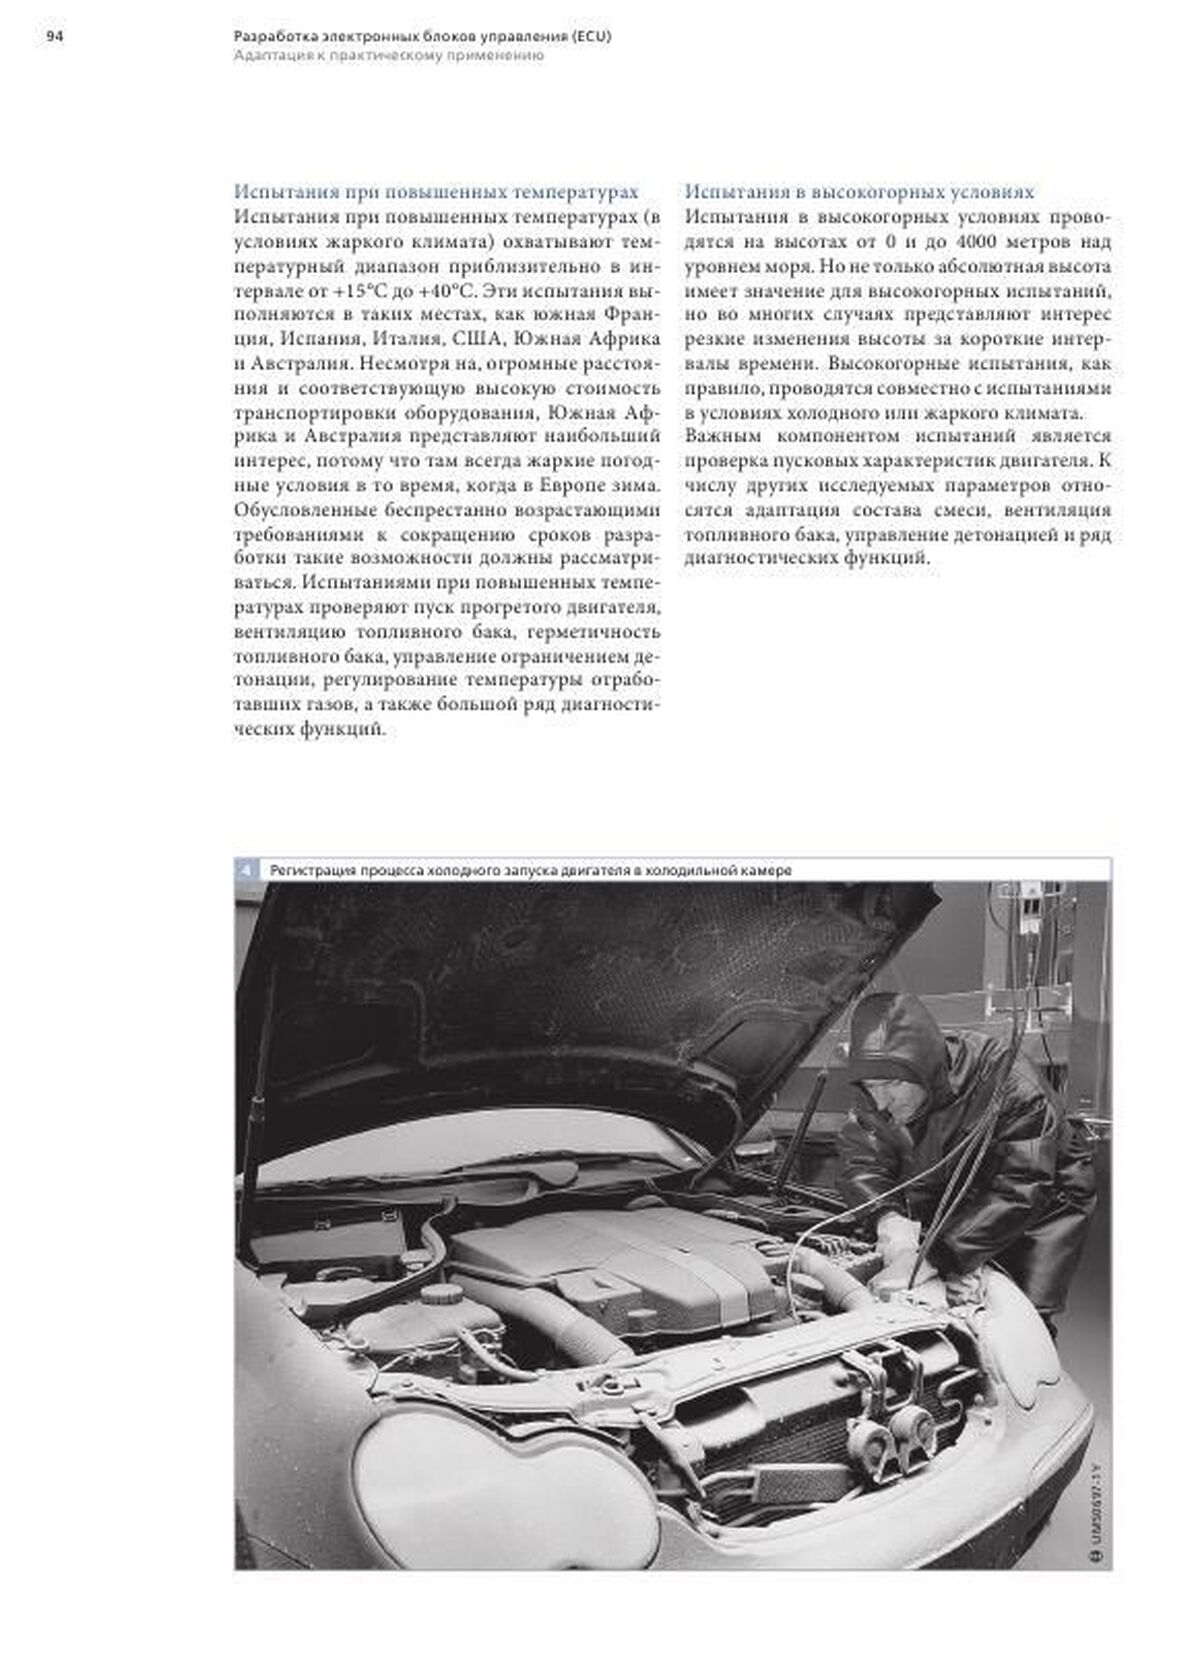 Книга: Управление бензиновыми двигателями системы Motronic | Легион-Aвтодата